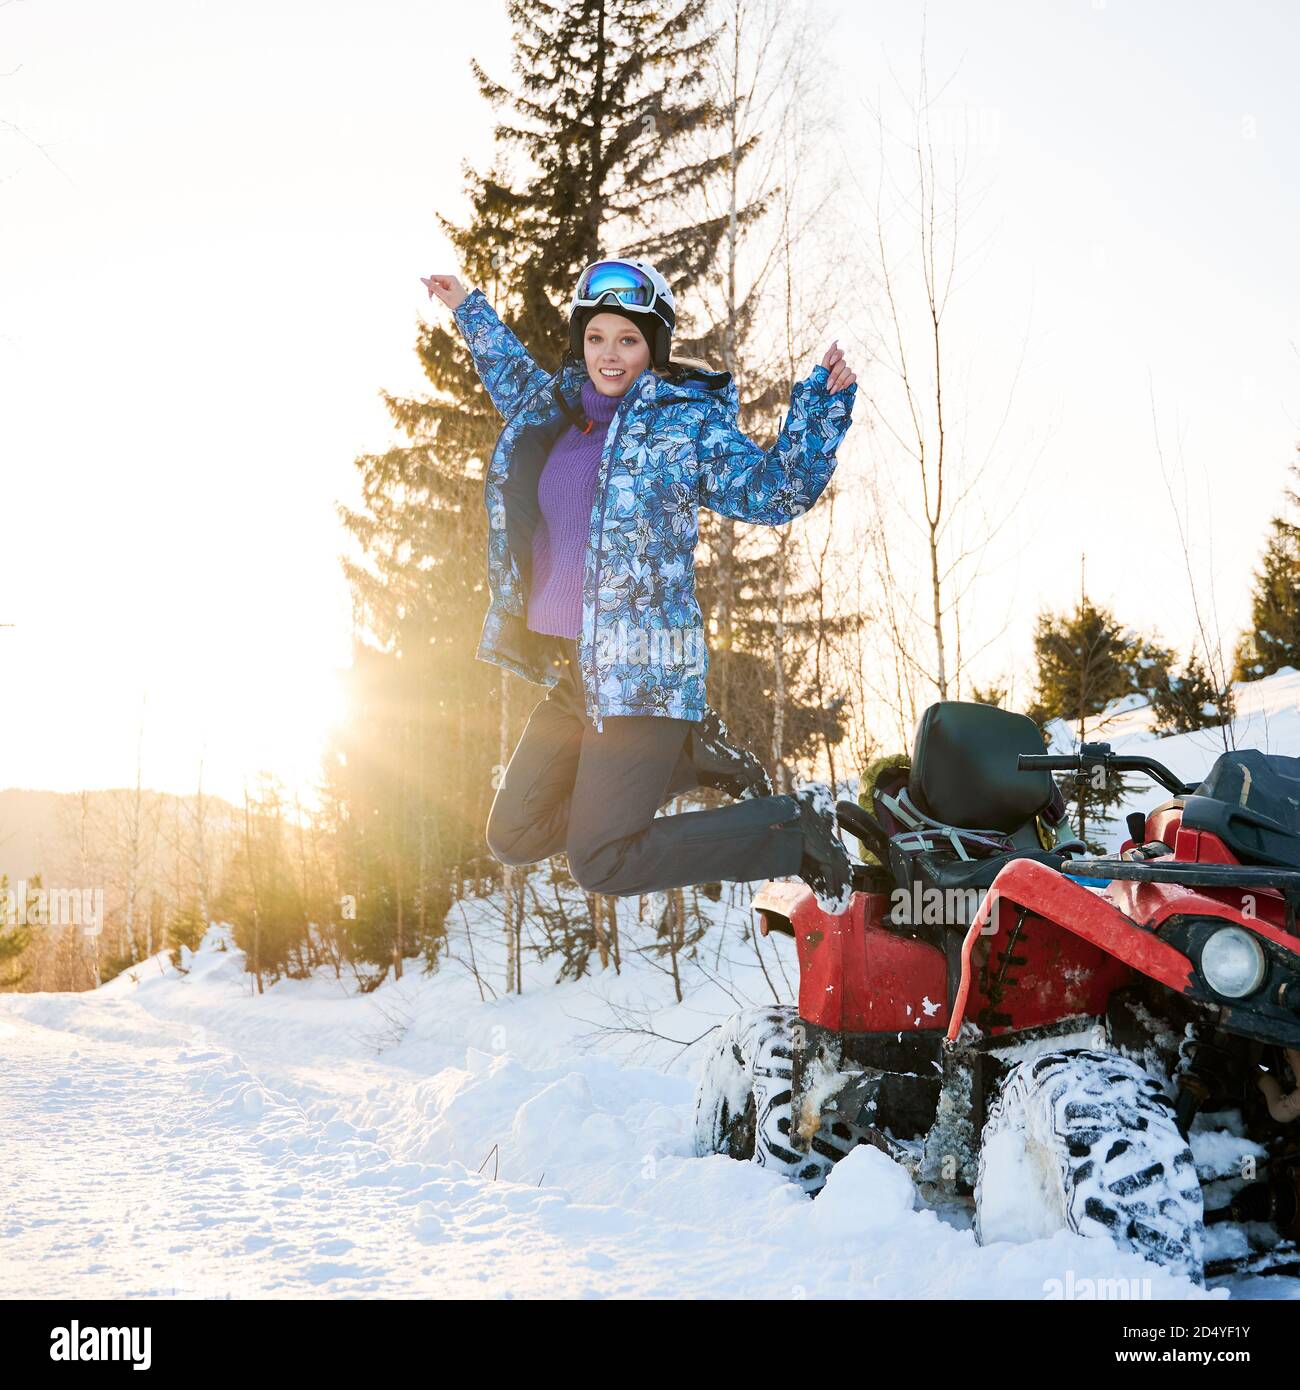 Portrait von schönen blonden Mädchen, trägt blaue Winterjacke Springen neben roten Vierrad ATV im Winter in verschneiten Bergen. Hell untergehende Sonne auf dem Hintergrund. Aktives Lifestyle-Konzept Stockfoto